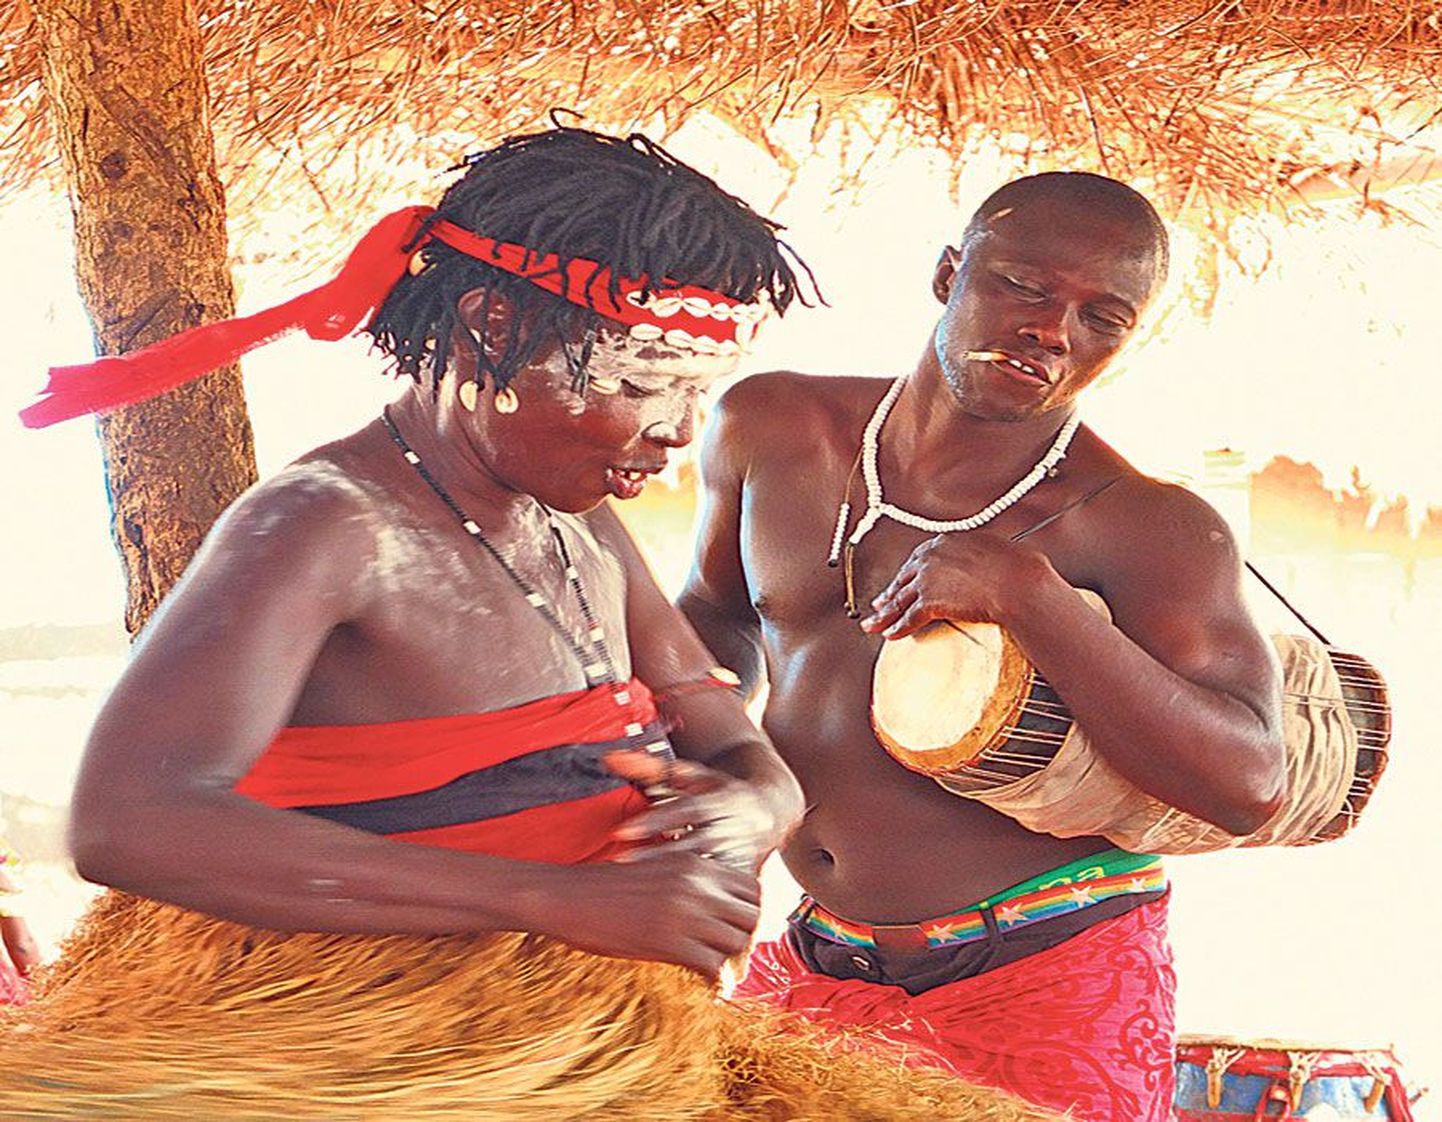 Ghana voodoo-rituaal: seni näib kõik kena, aga peagi väljub olukord kontrolli alt.